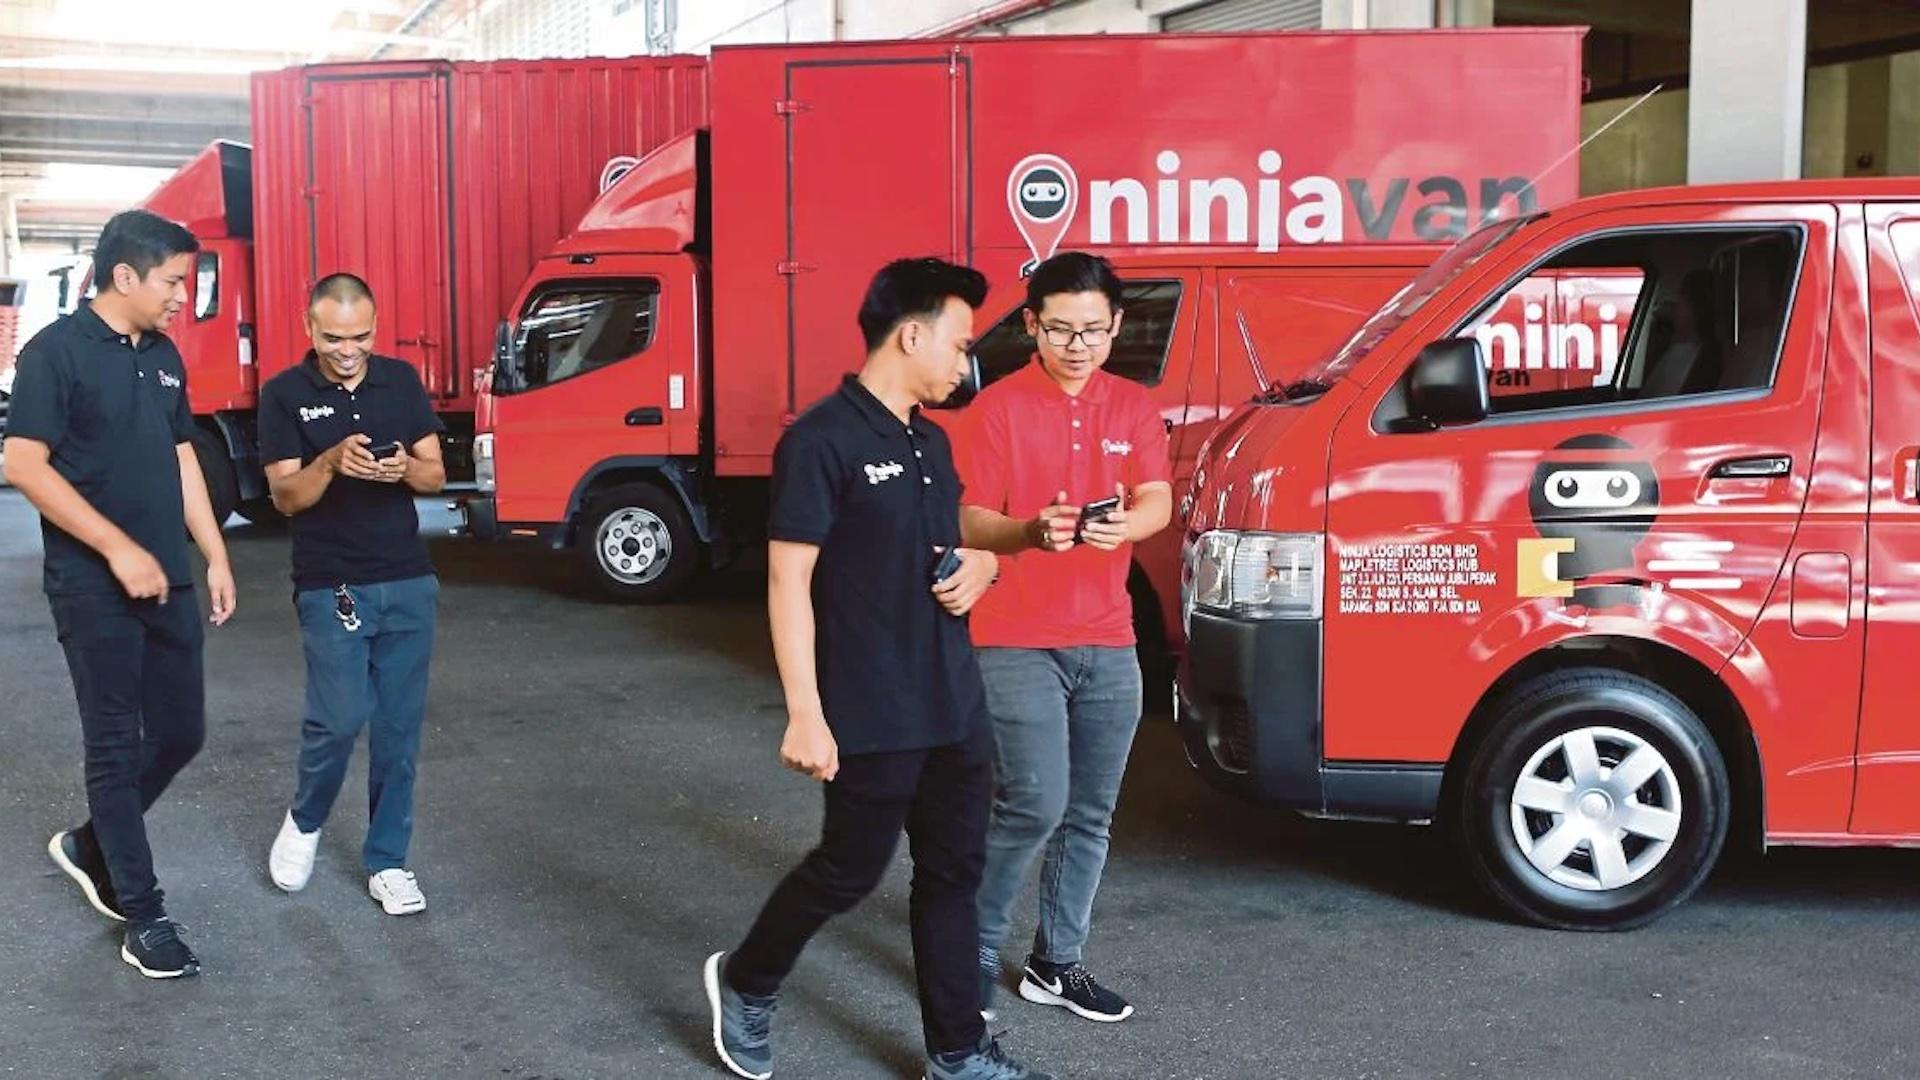 Ninja Van’s $100M SME Expansion Plans in SEA